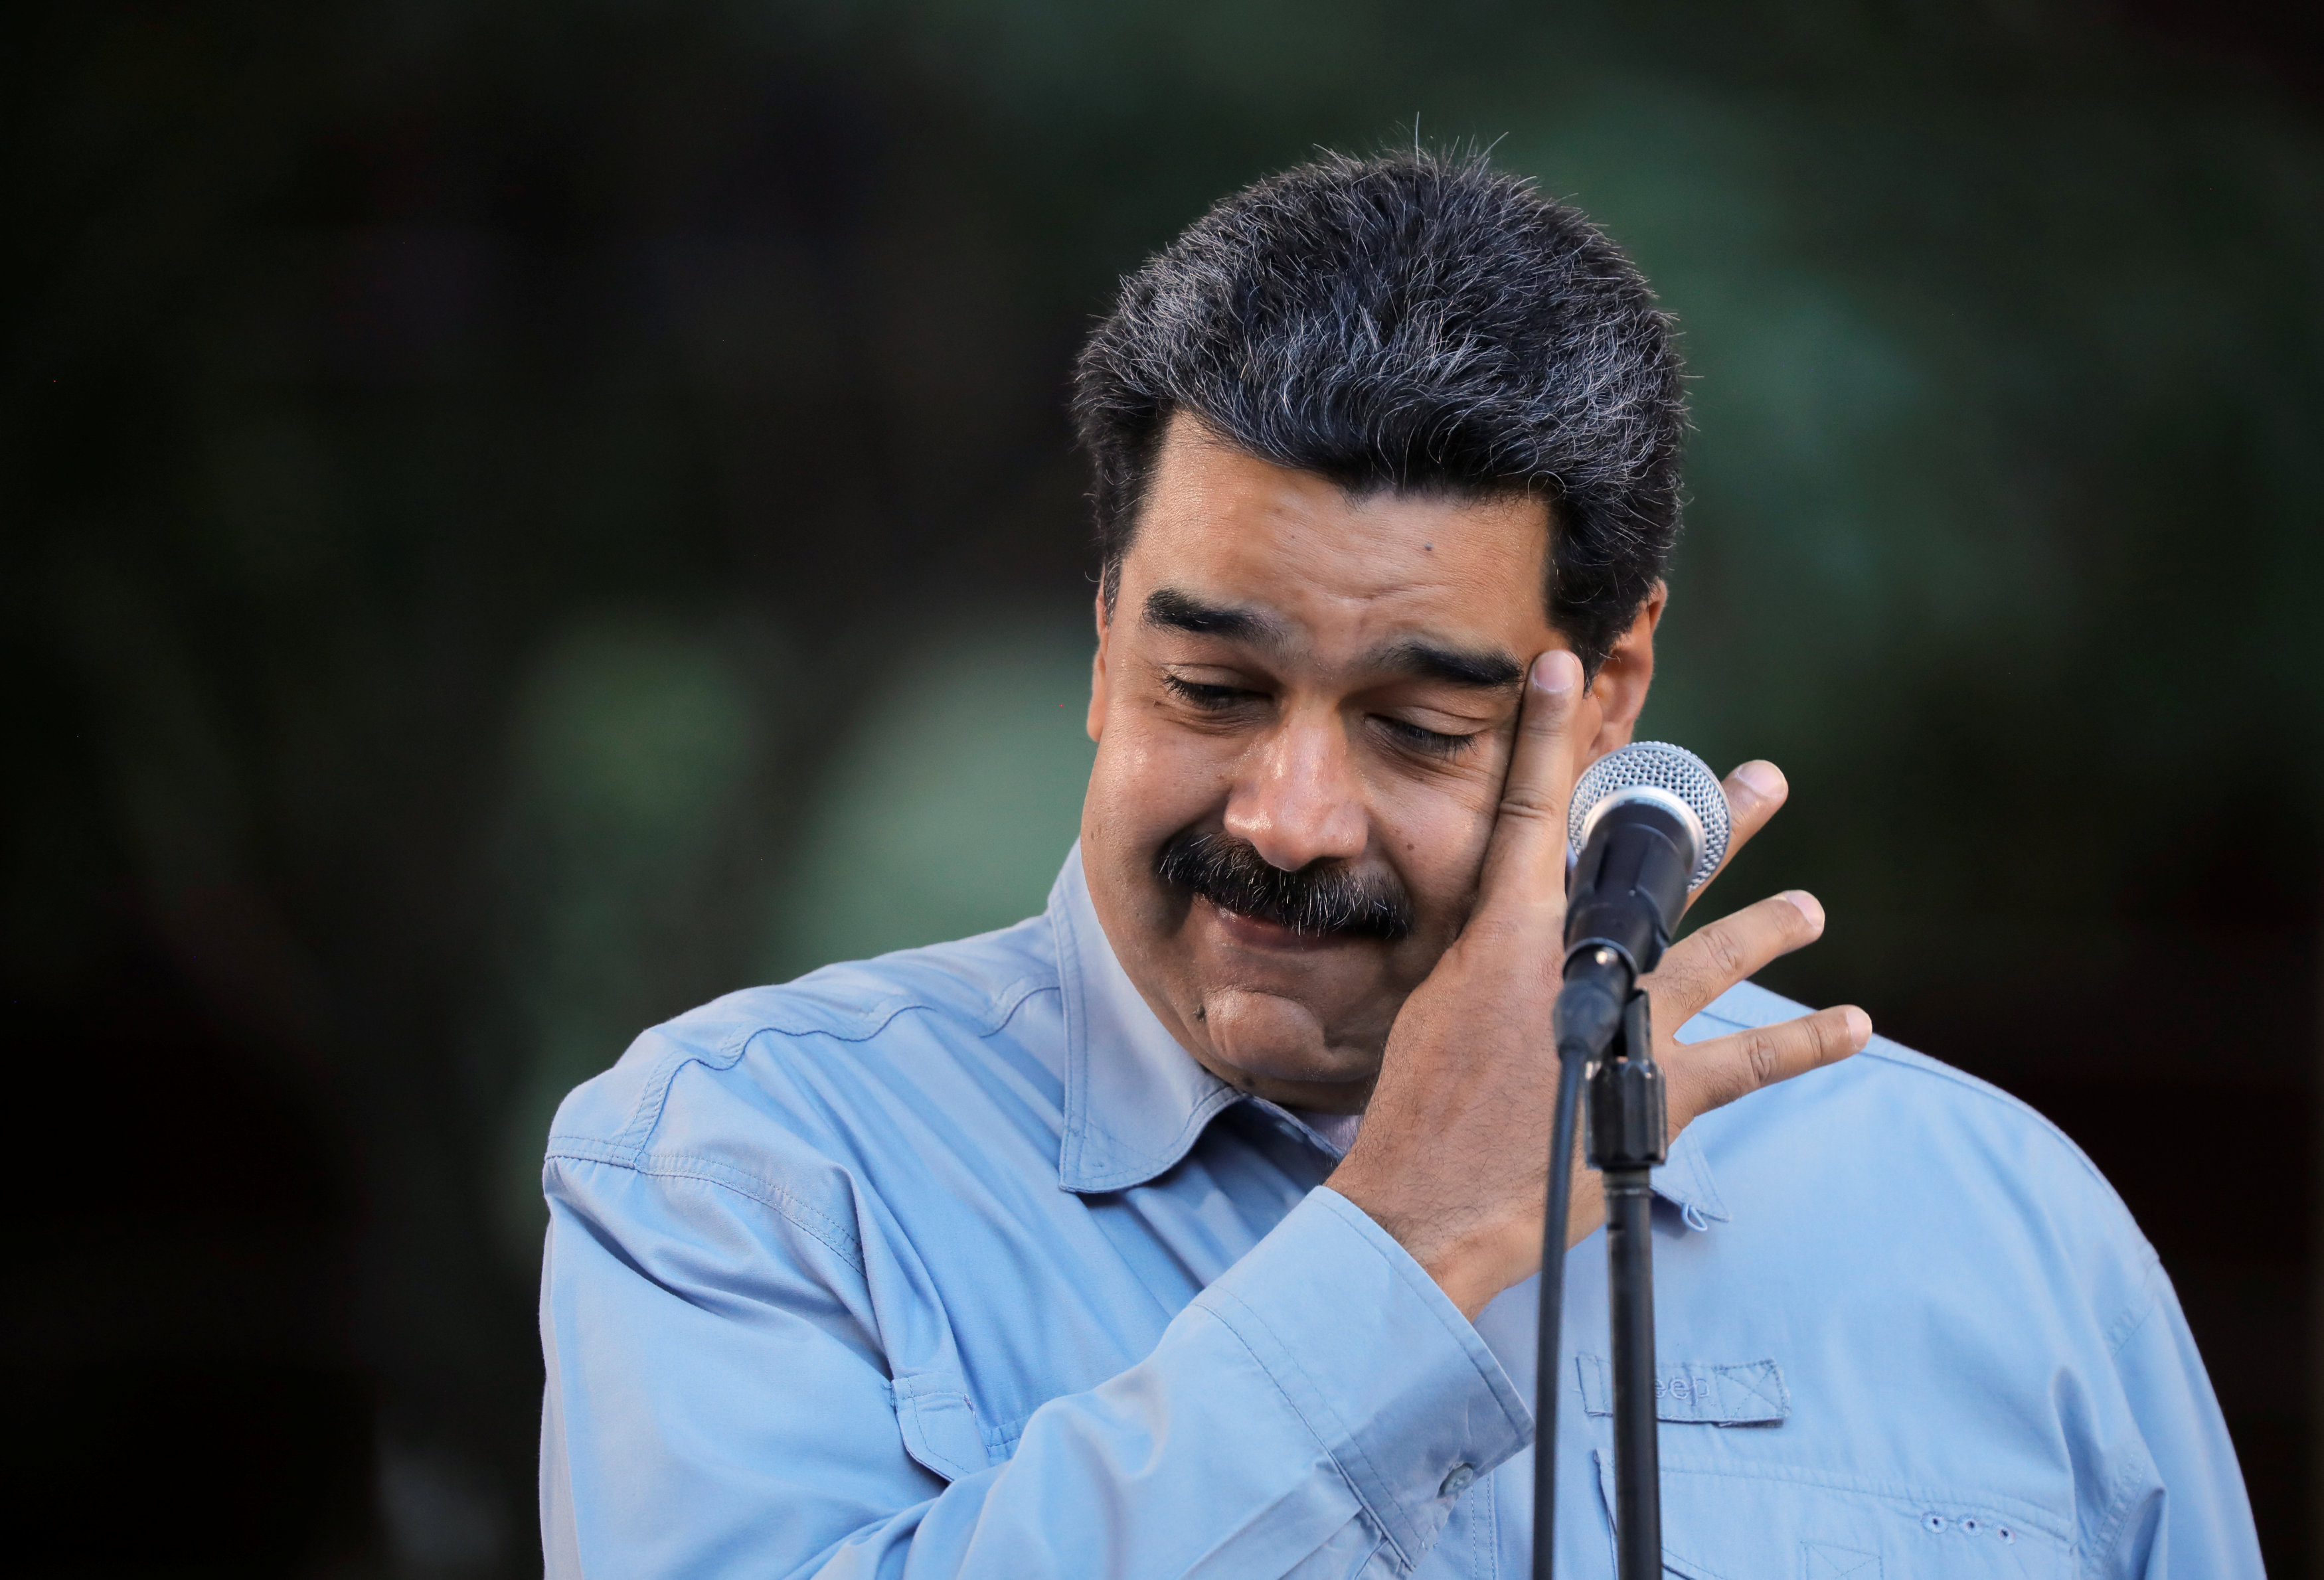 ¿Afectará al régimen de Maduro la exclusión de bancos rusos de la plataforma Swift?